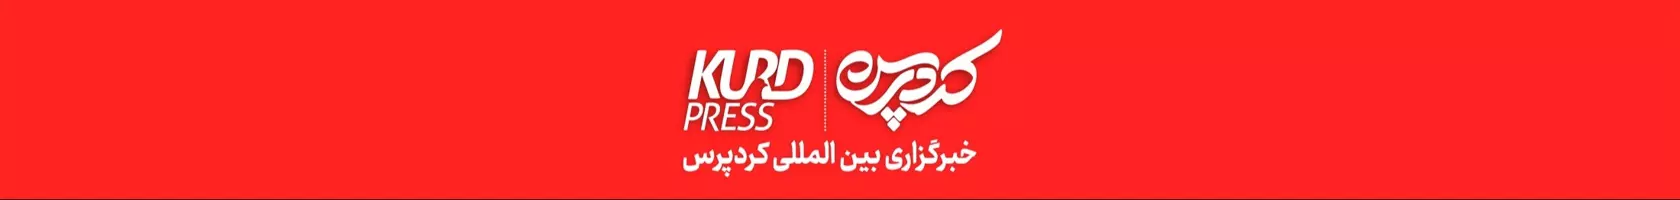  Kurd_press